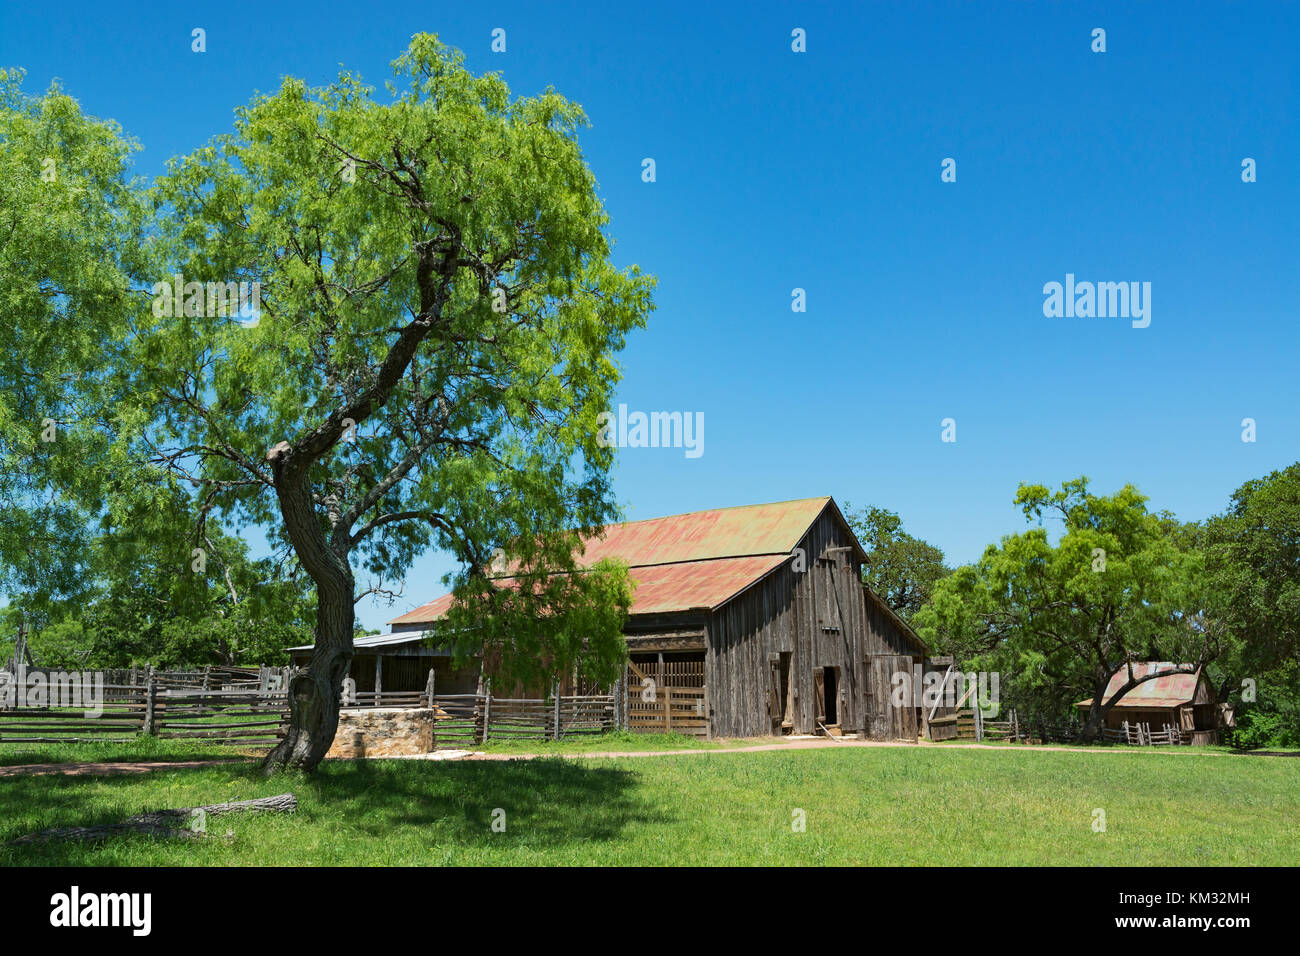 Texas, Stonewall, lbj State Park und historischen Ort, sauer-Beckmann, Living History Farm, ca. 1915-1918, Holz- Scheune Stockfoto